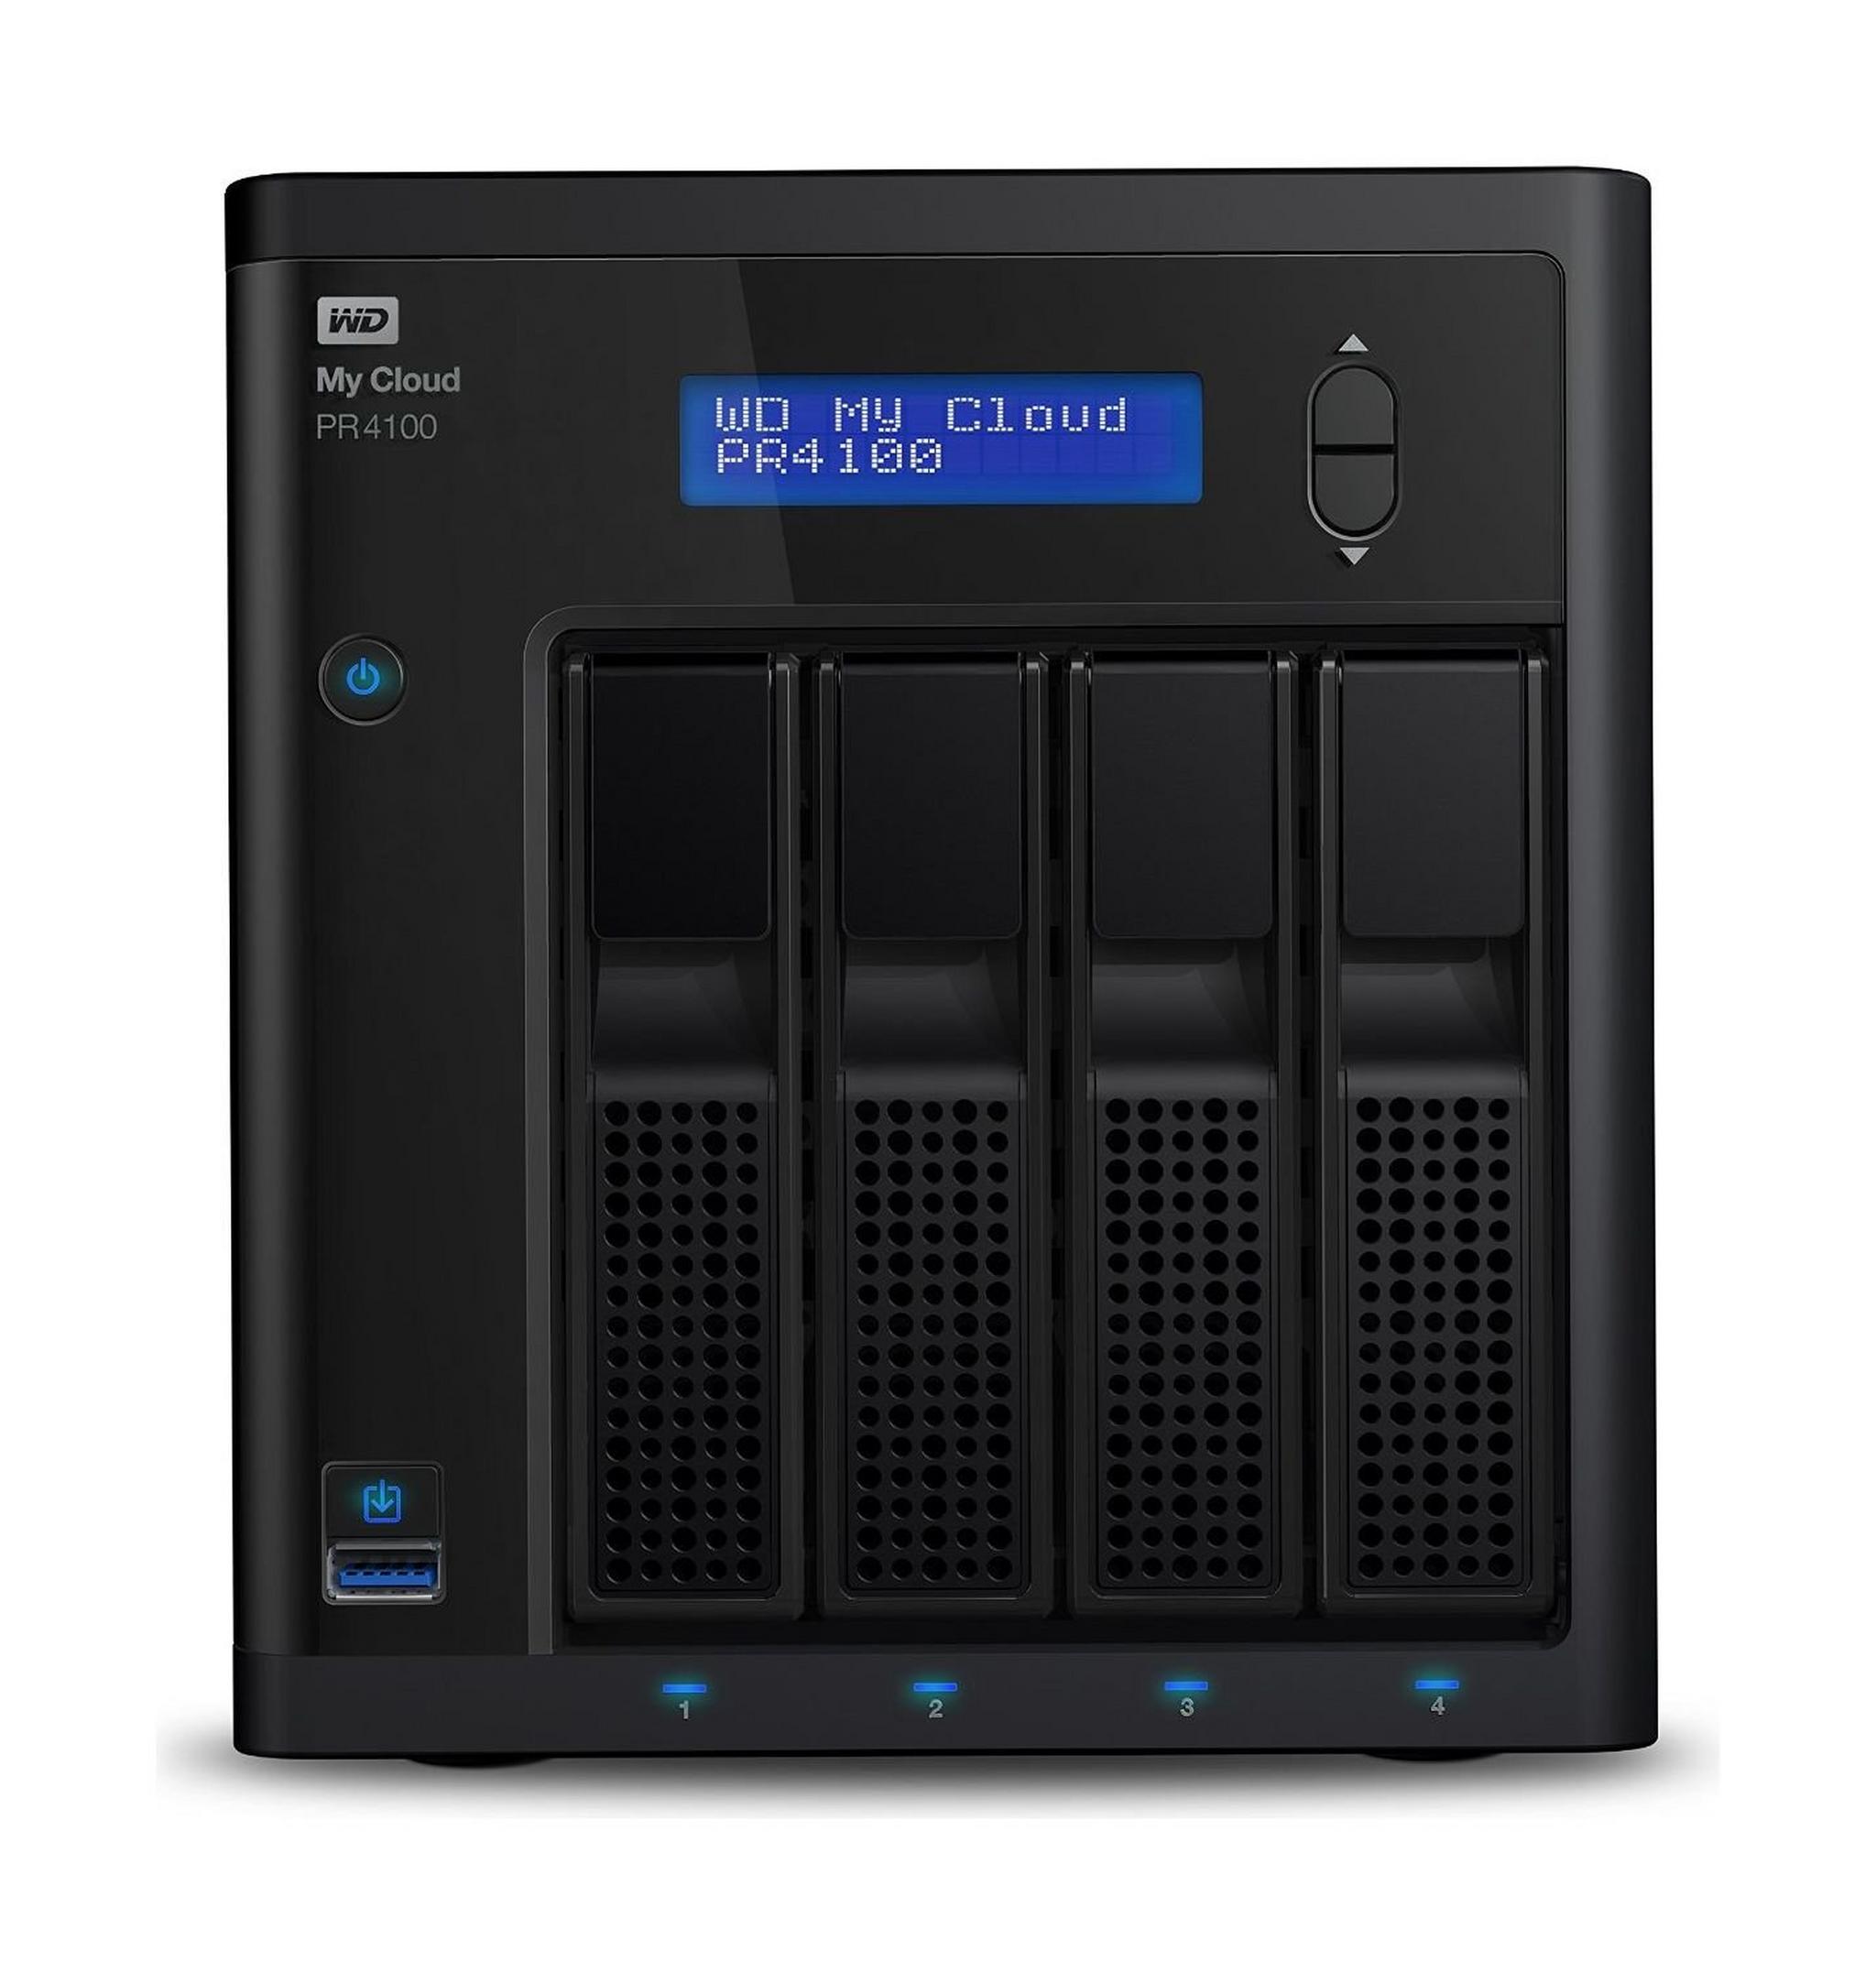 Western Digital My Cloud PR4100 16TB 4-Bay NAS And Cloud Storage (WDBNFA0160NBK)